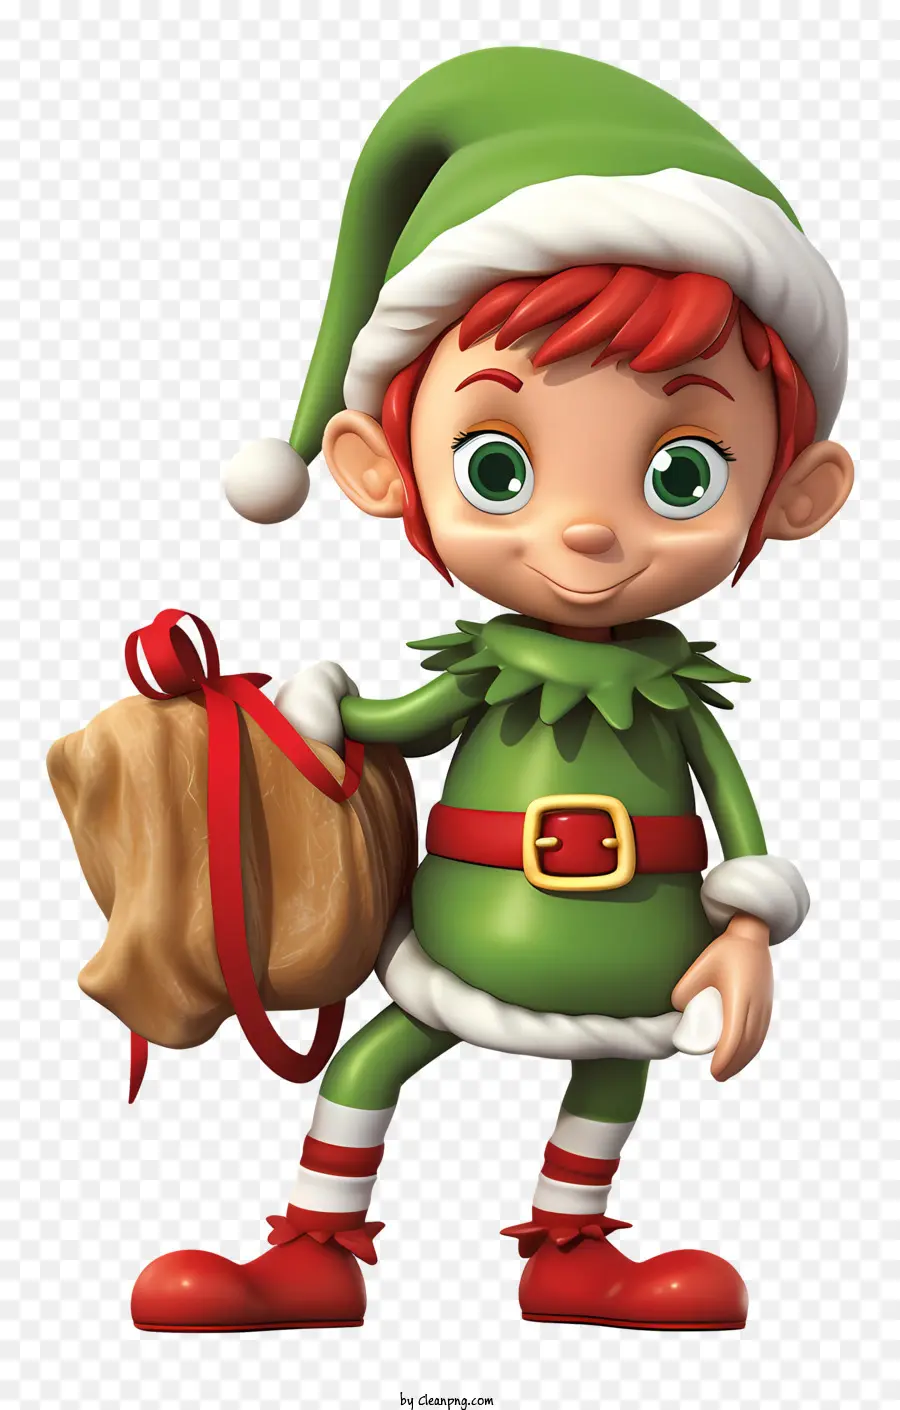 Cartoon Charakter Weihnachtsmann Kostüm rot und grüner Anzug Geschenke grüne Augen - Cartooncharakter in Santa Kostüm trägt Geschenke